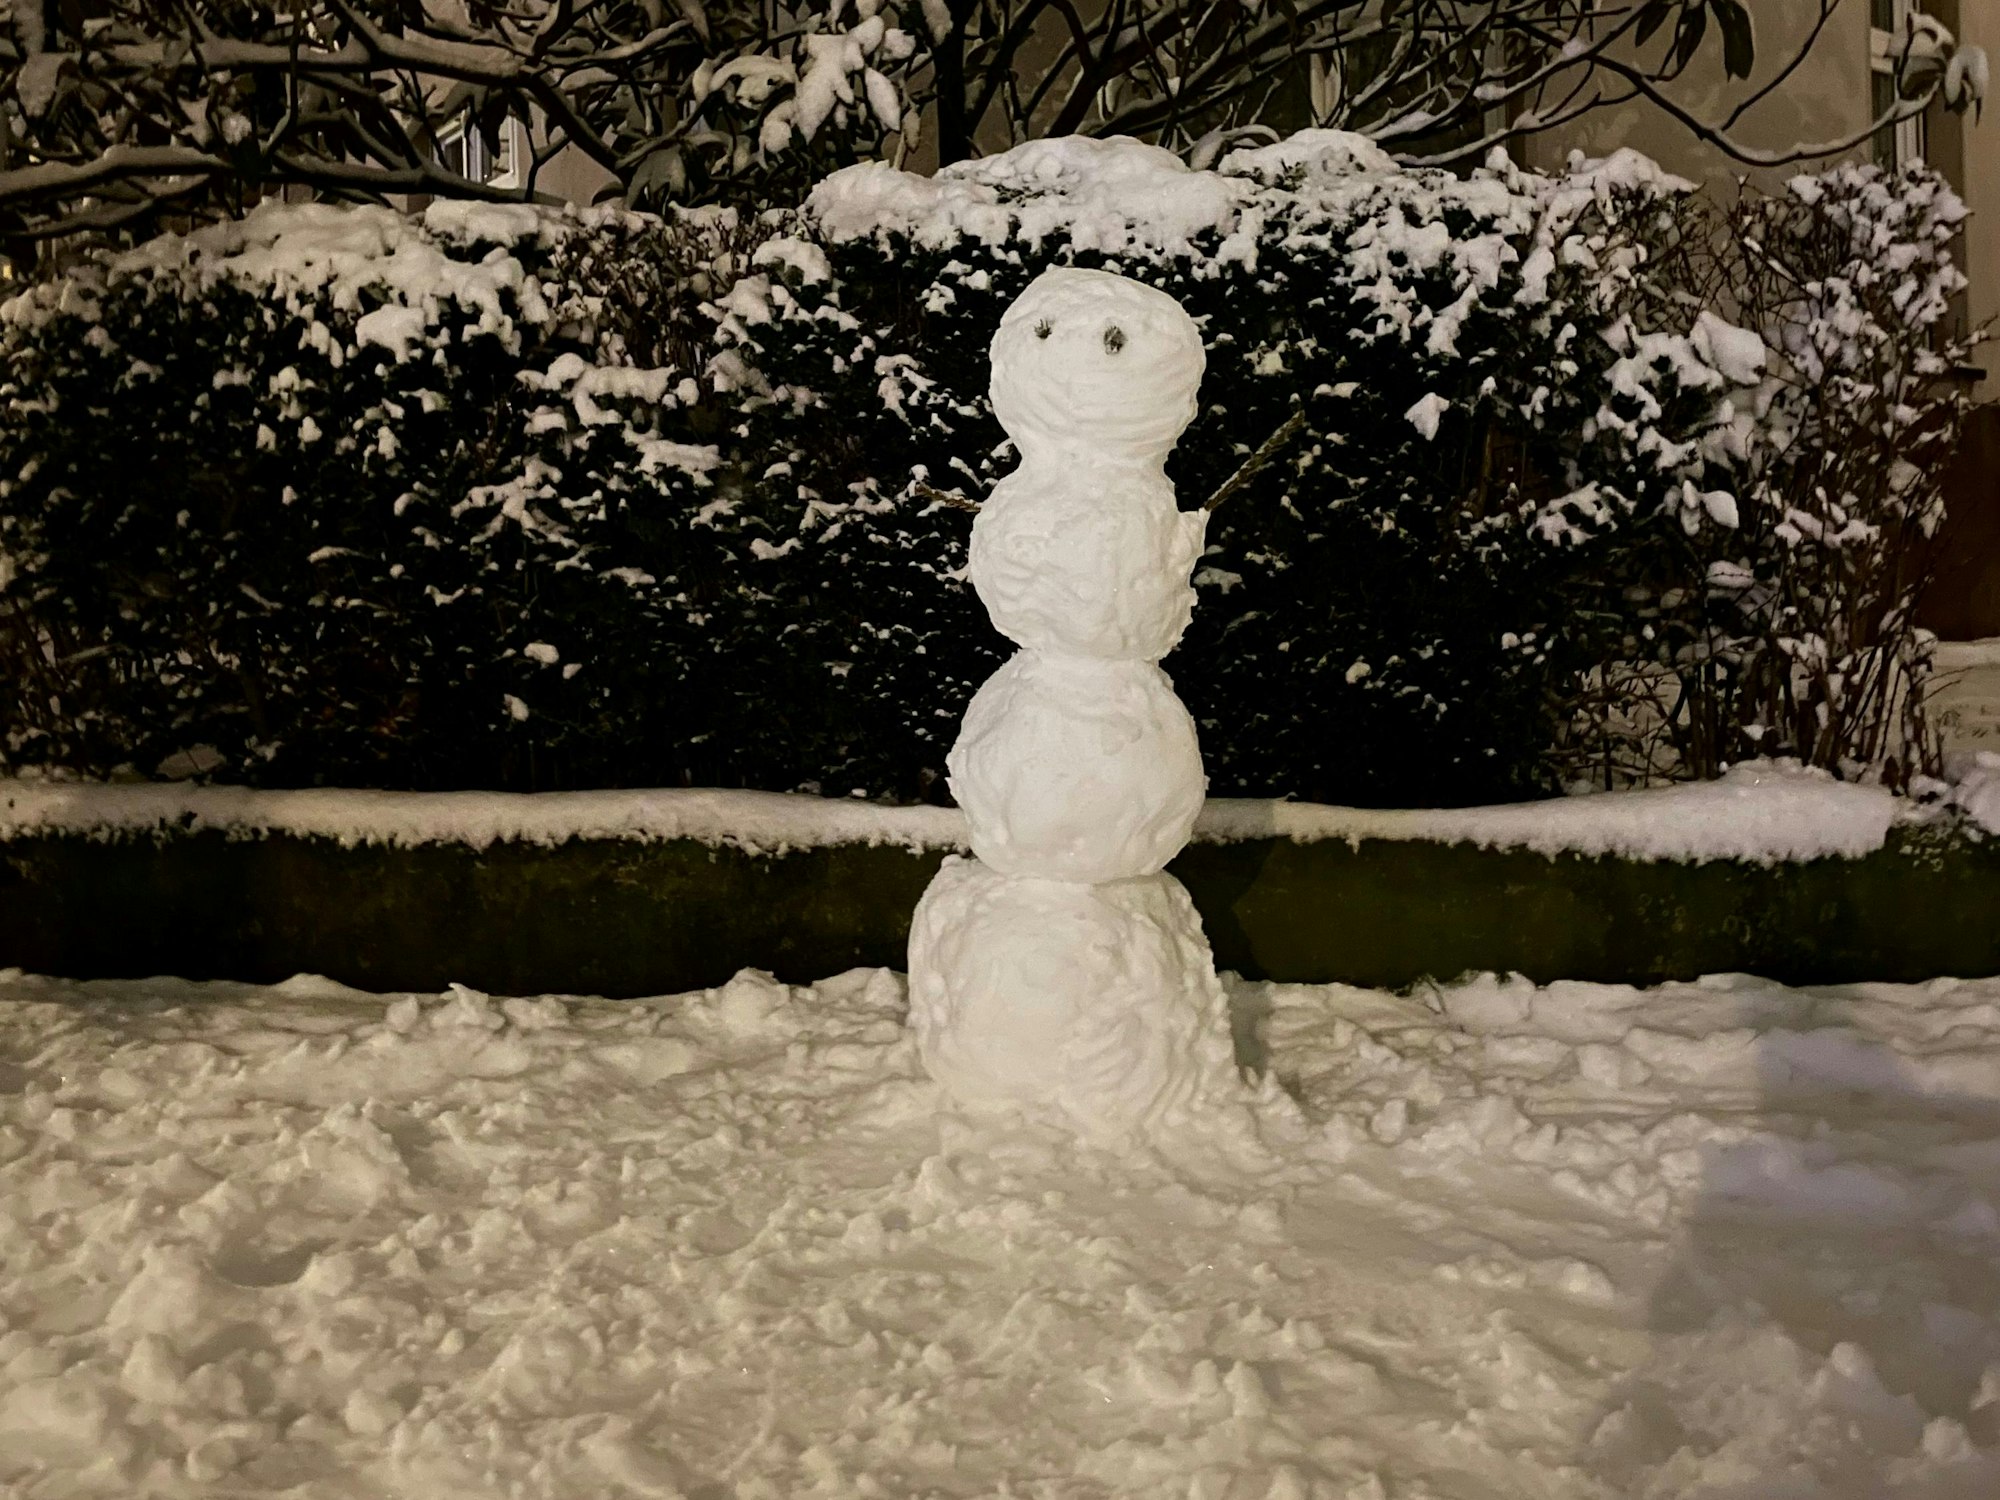 Schneemann oder Schneefrau im Garten.